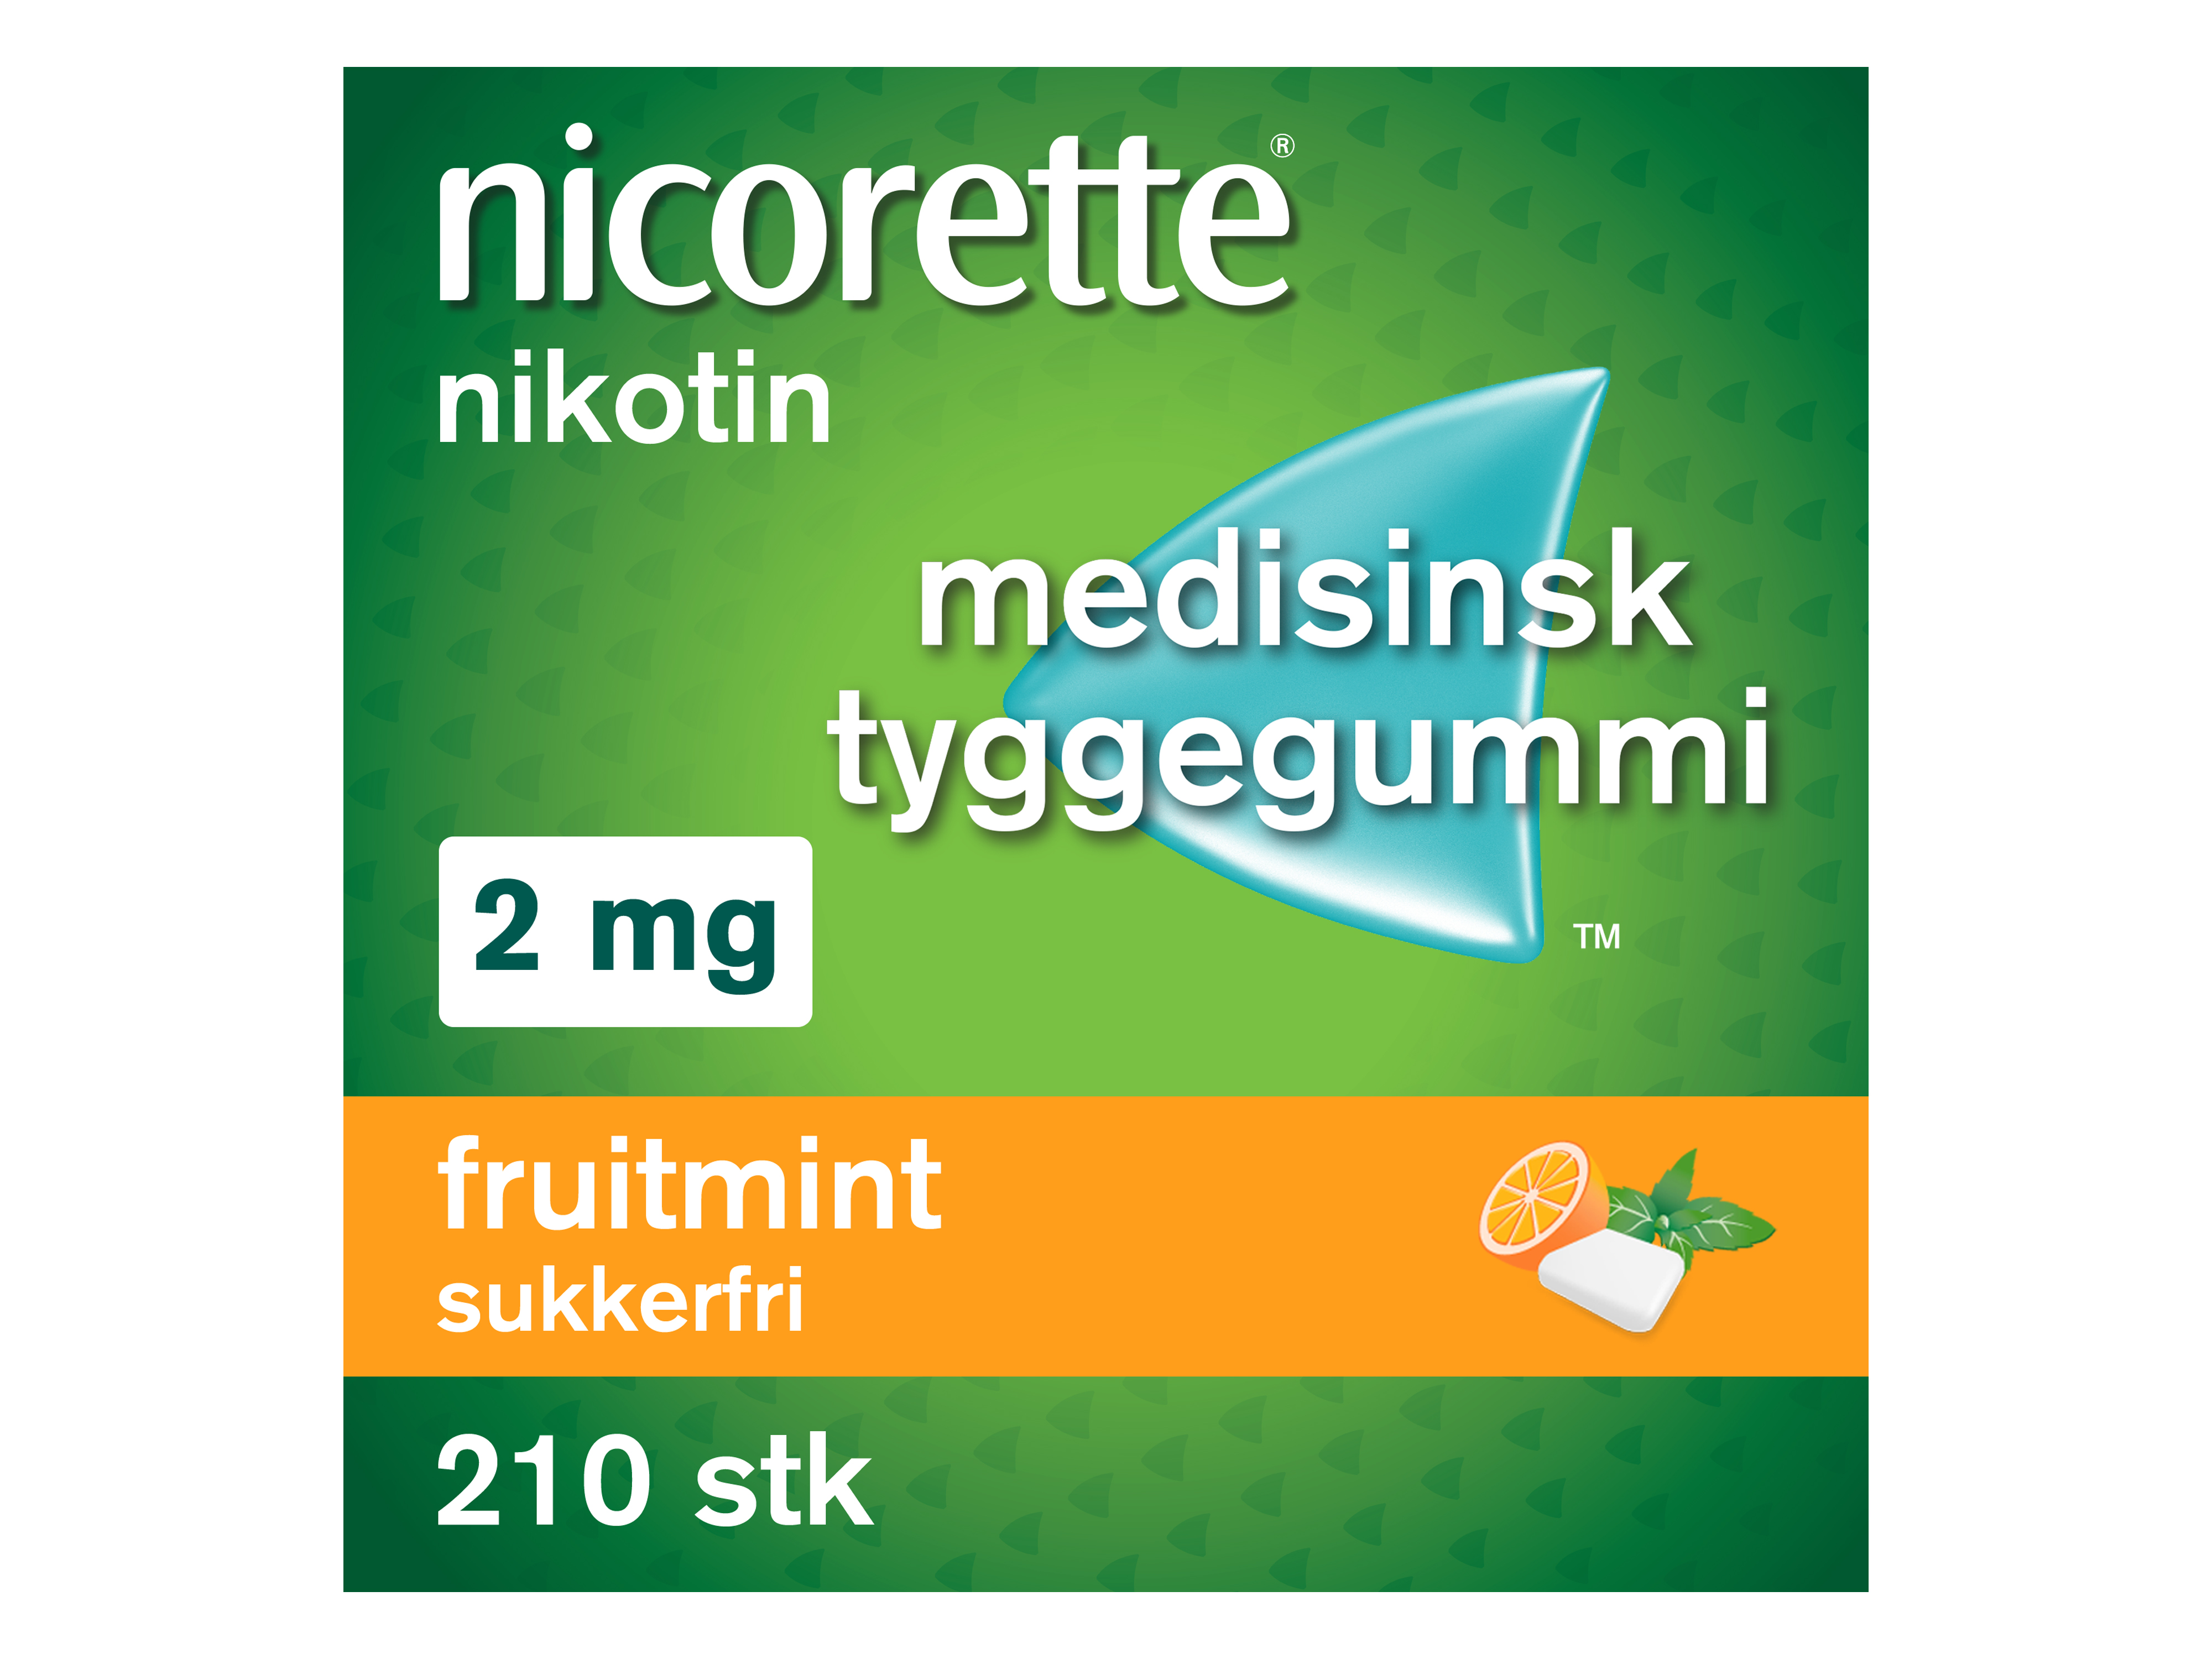 Nicorette Tyggegummi, 2 mg nikotin, Fruitmint 210 stk., Slutte å røyke